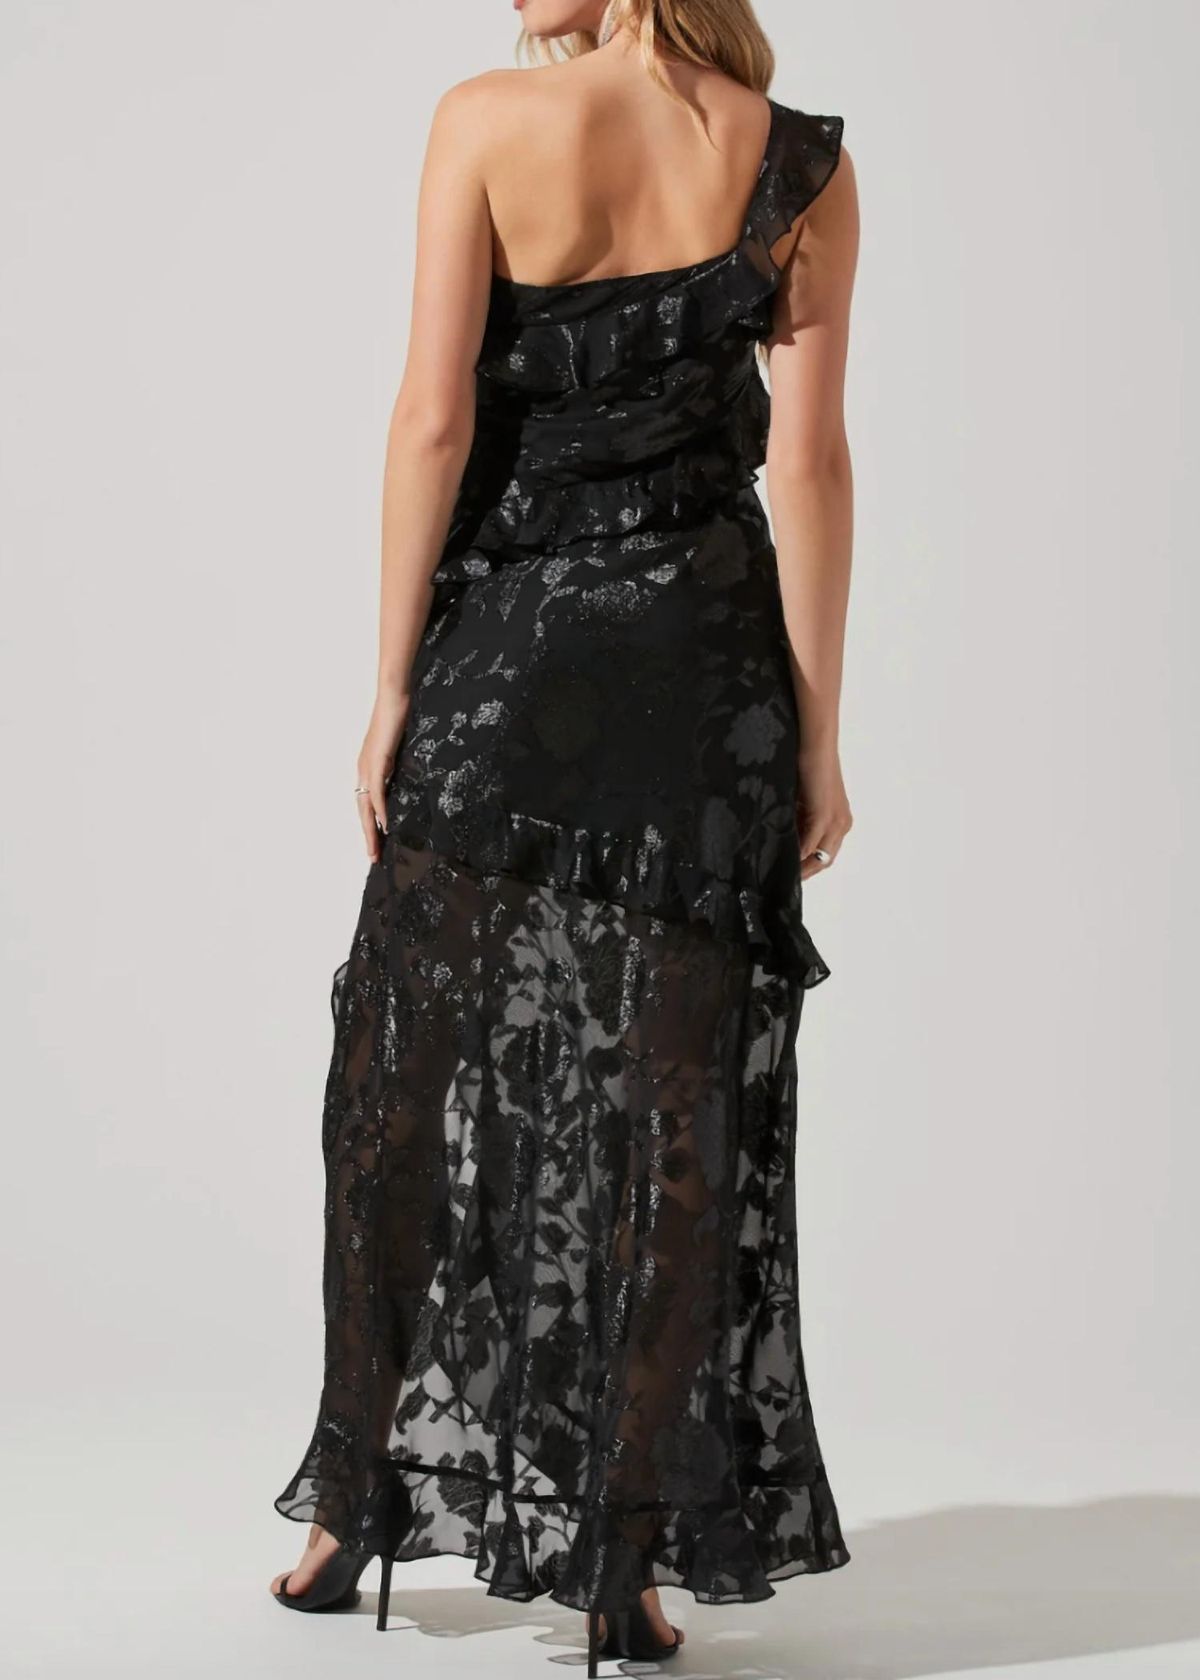 Style 1-3975519864-2901 ASTR Size M Floral Black Side Slit Dress on Queenly